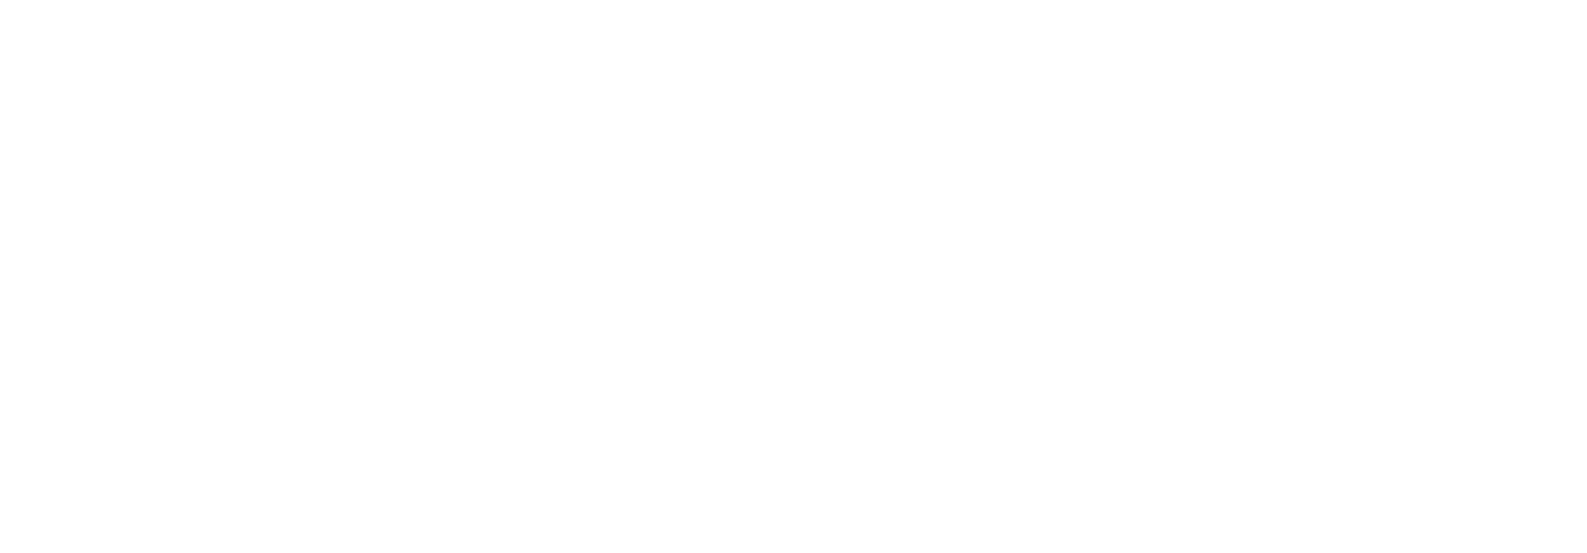 Helix Energy Solutions logo grand pour les fonds sombres (PNG transparent)